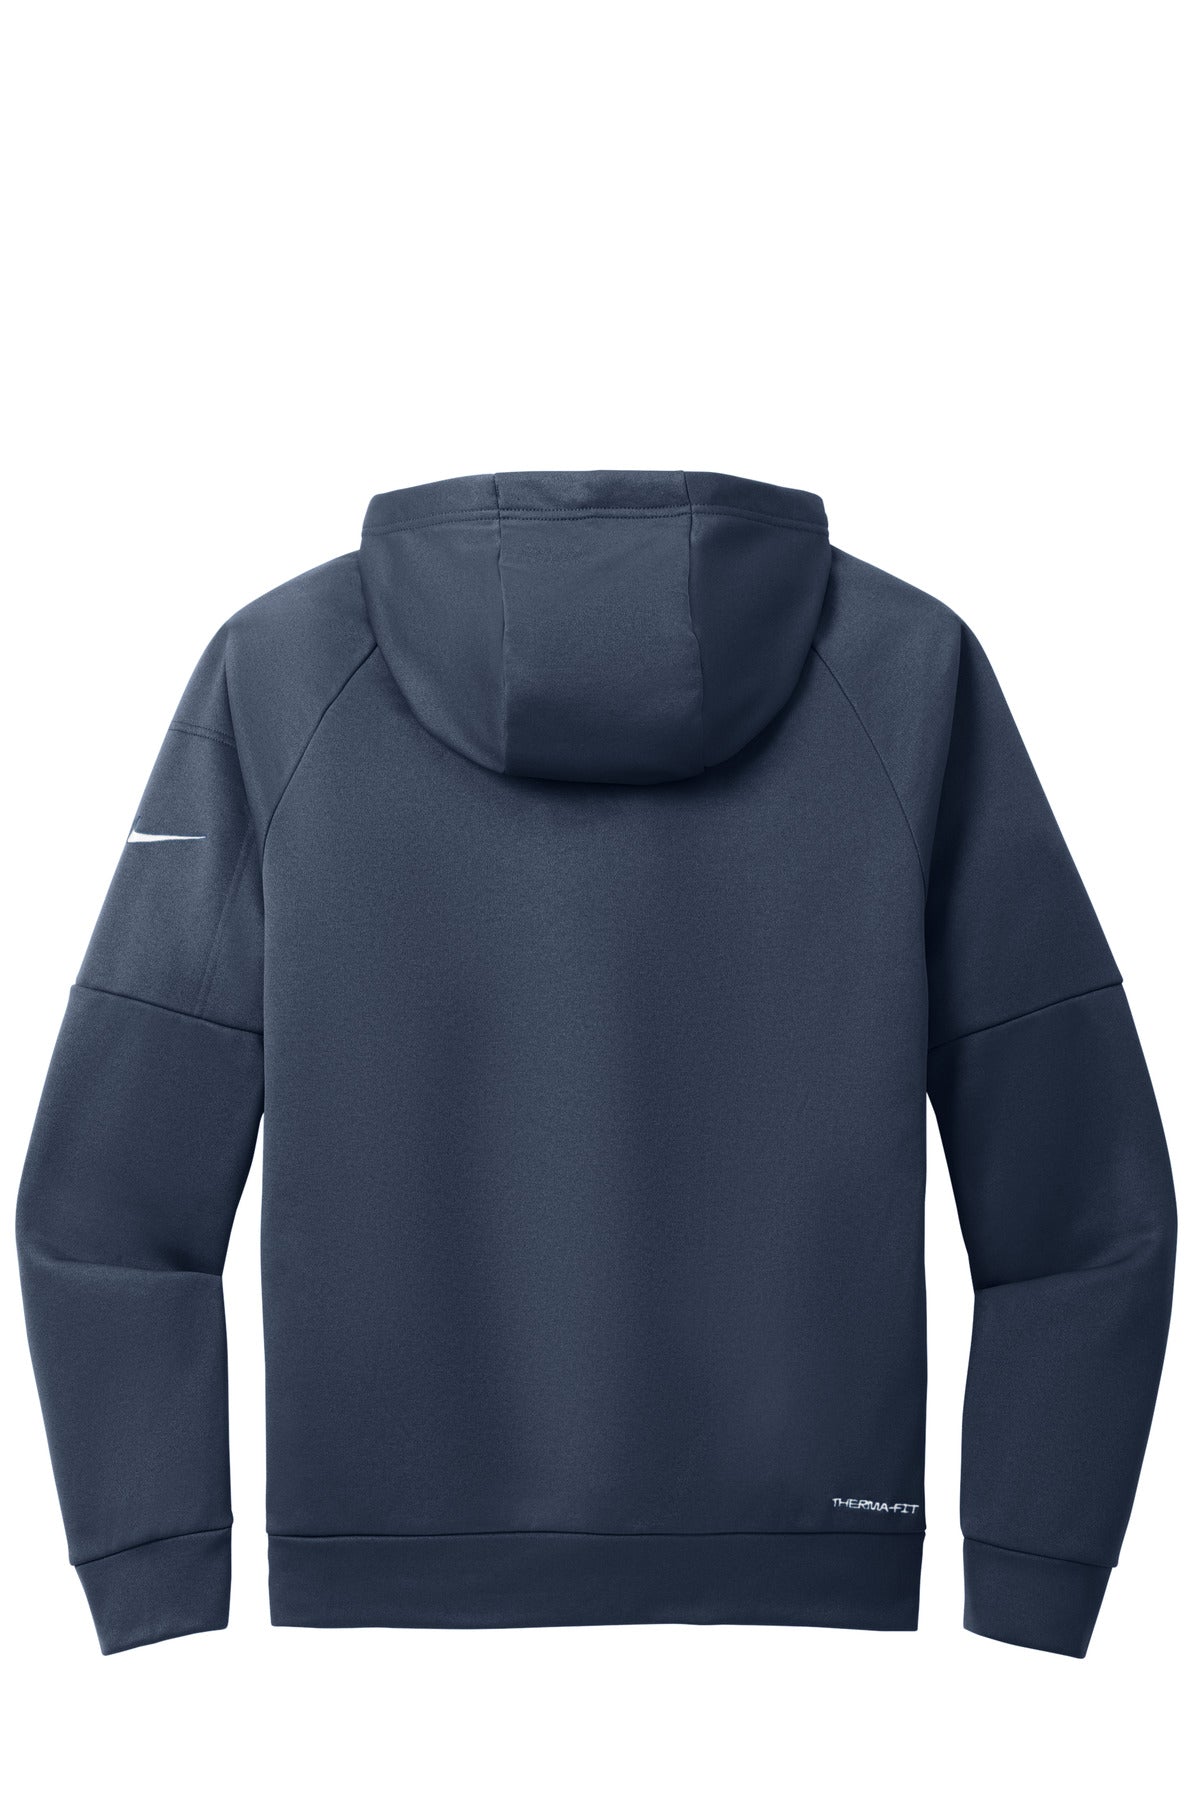 Nike Therma-FIT Pocket Full-Zip Fleece Hoodie NKFD9859